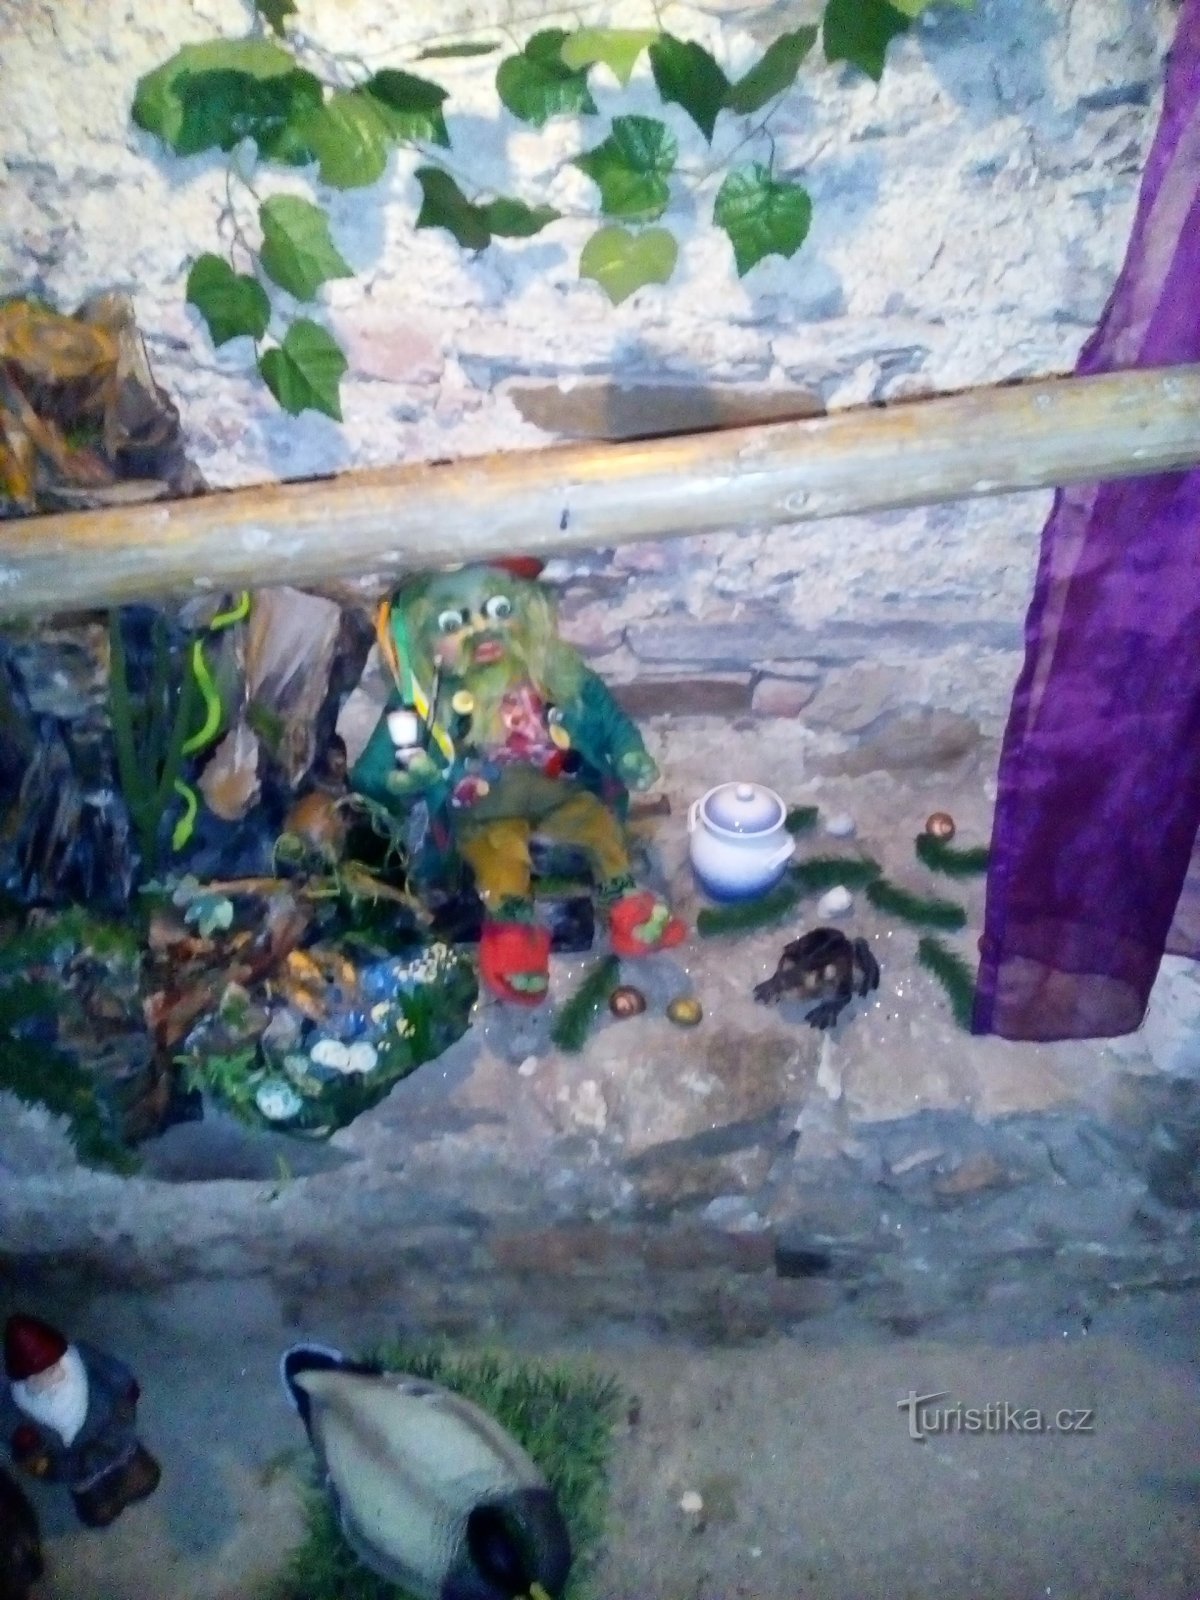 Le souterrain de conte de fées de Hluboká nad Vltavou